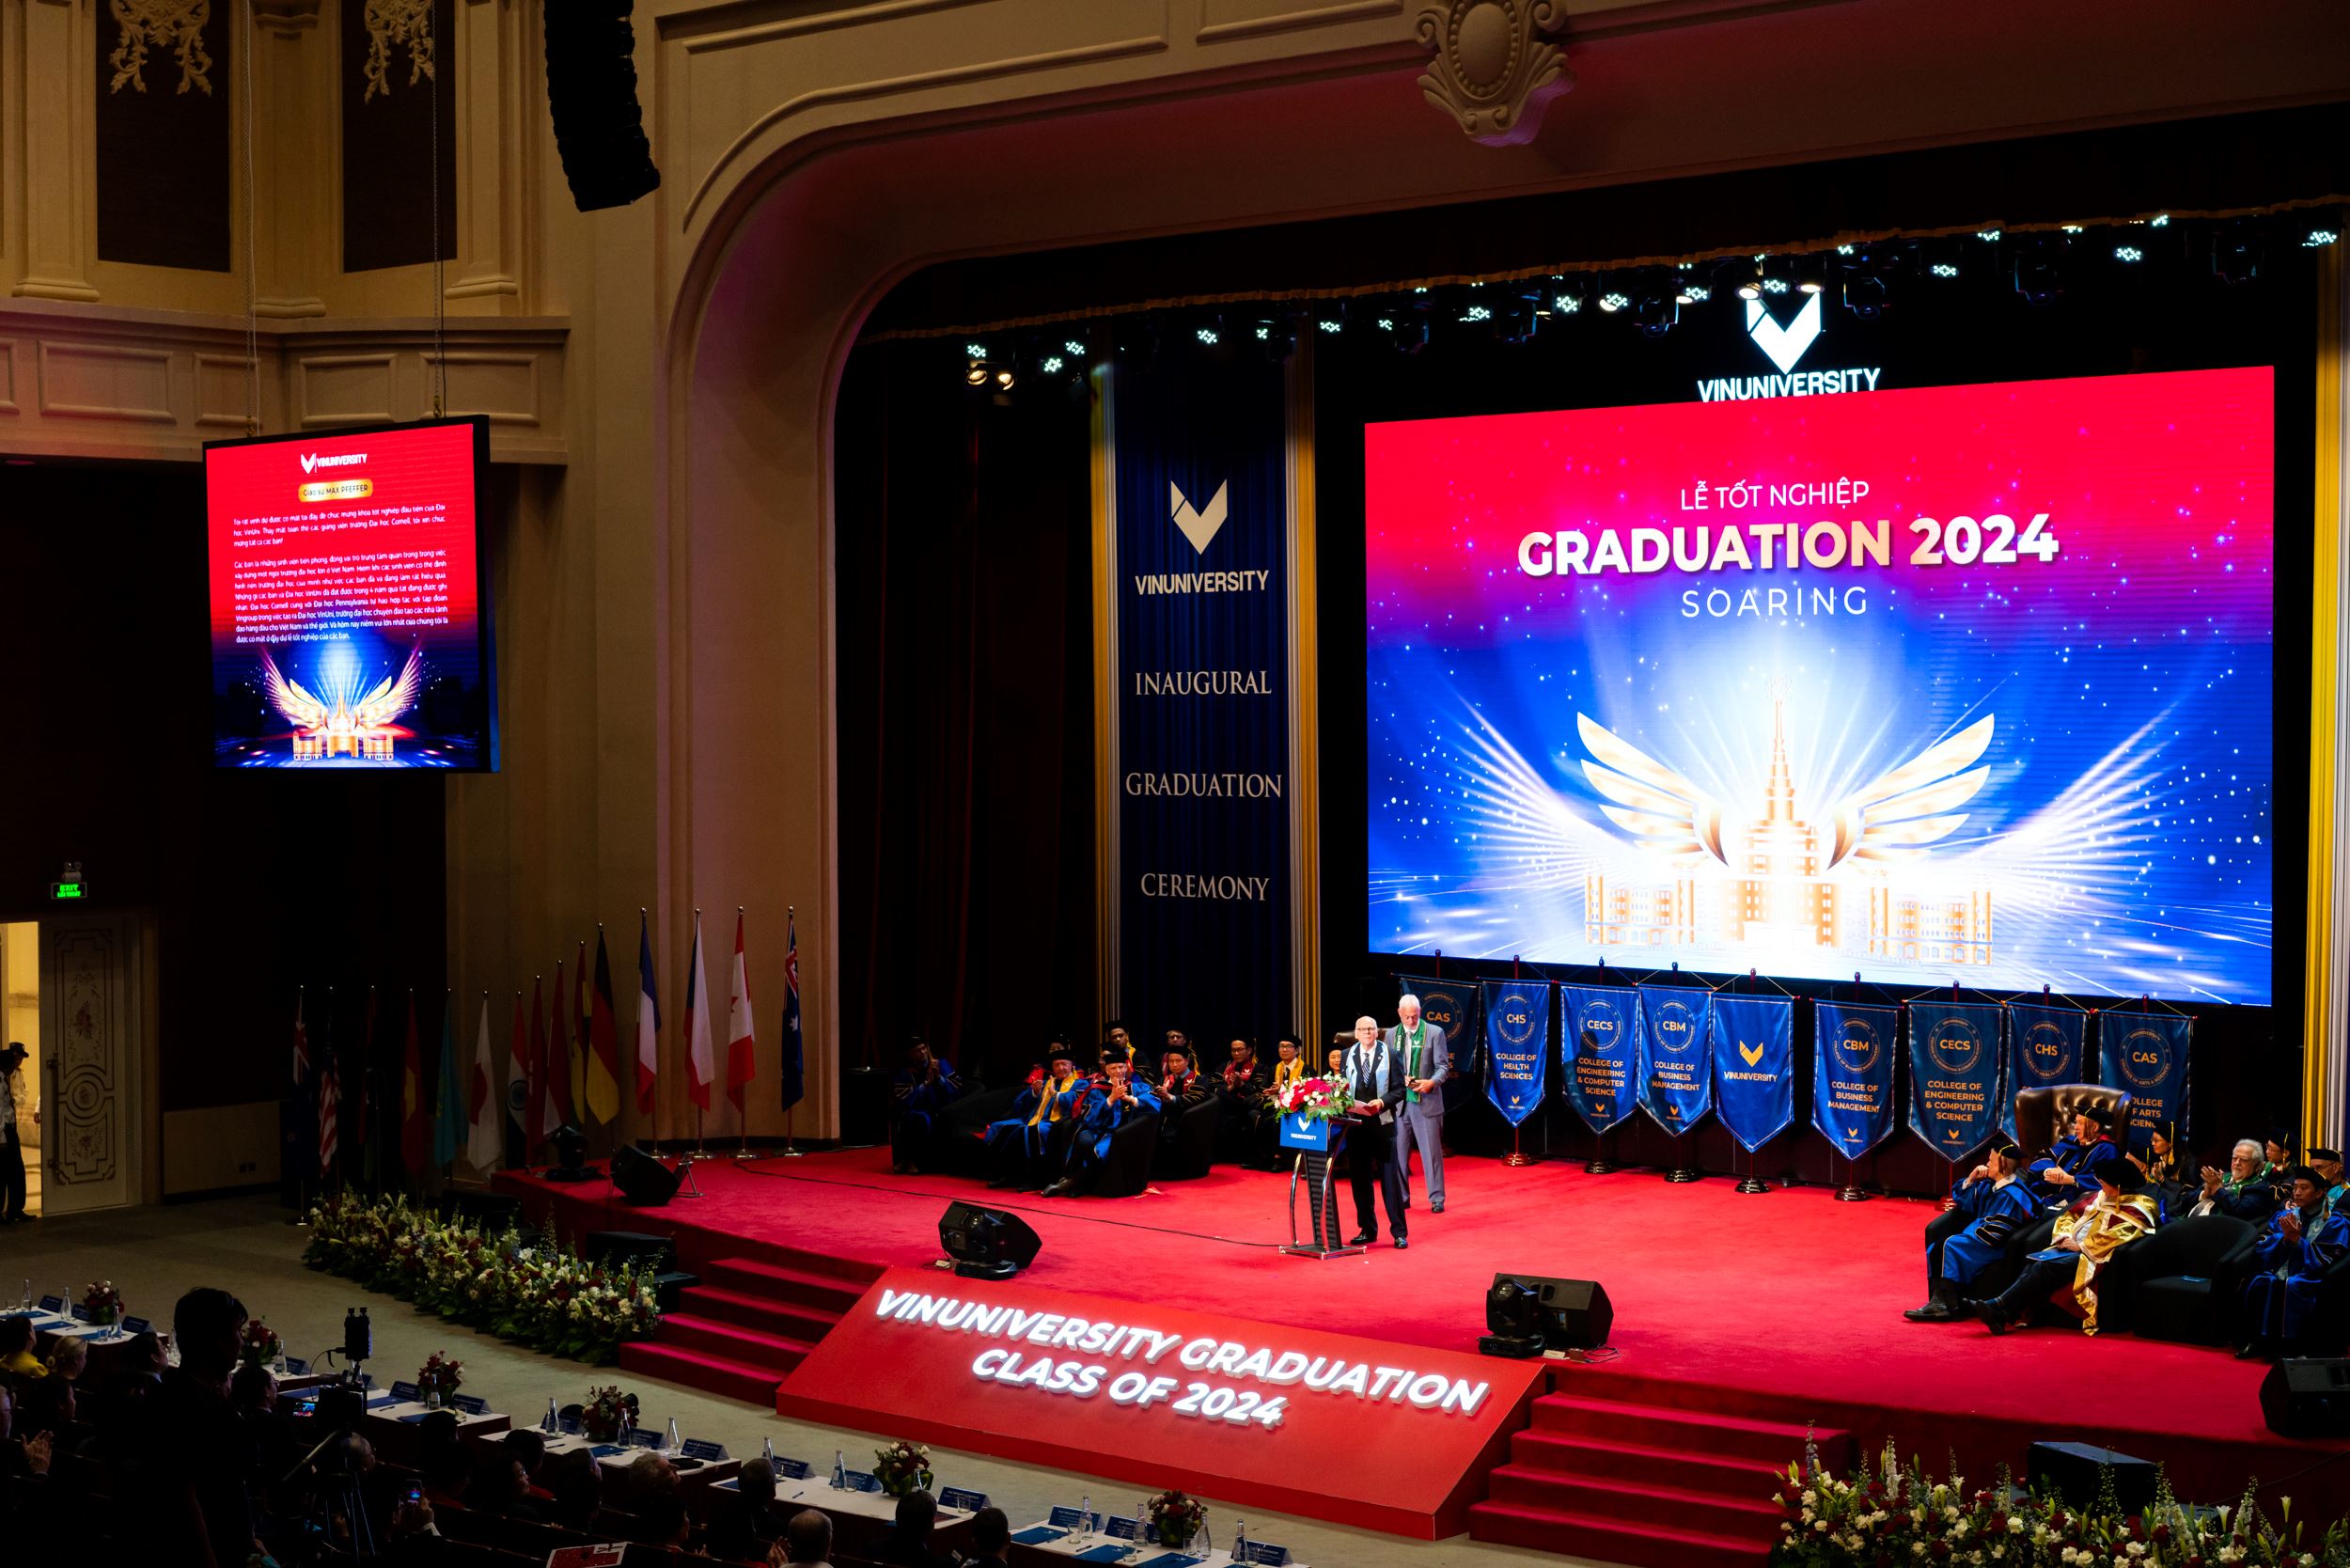 Tại Lễ tốt nghiệp sáng 29/6, GS Max J. Pfeffer ghi nhận thành tựu ngoài mong đợi của sinh viên và VinUni trên con đường trở thành trường Đại học tinh hoa, đẳng cấp của Việt Nam.